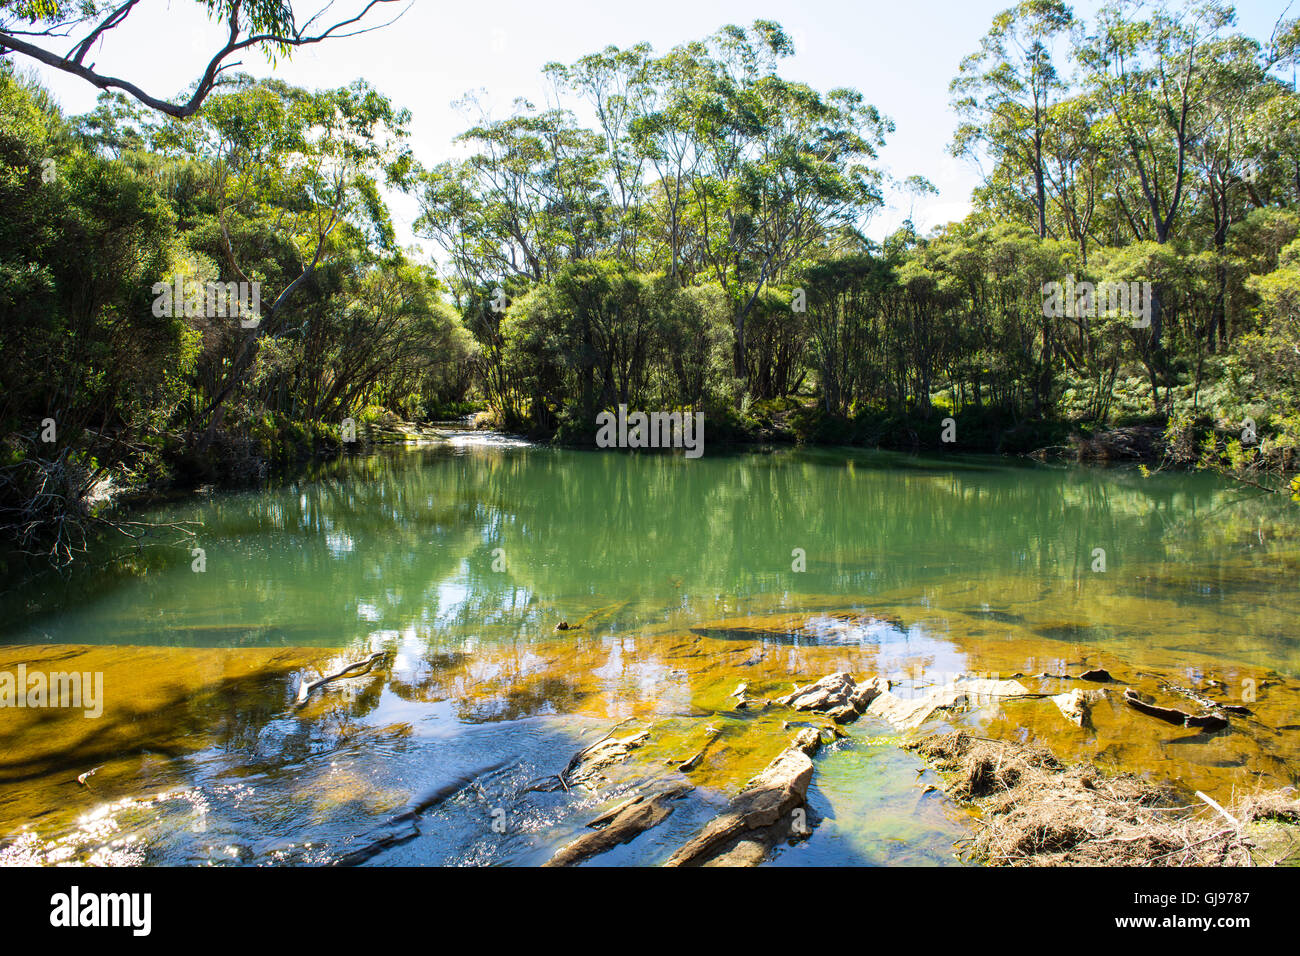 Piscine bleu Missingham Creek Carrington Falls Parc national de Budderoo New South Wales Australie Banque D'Images